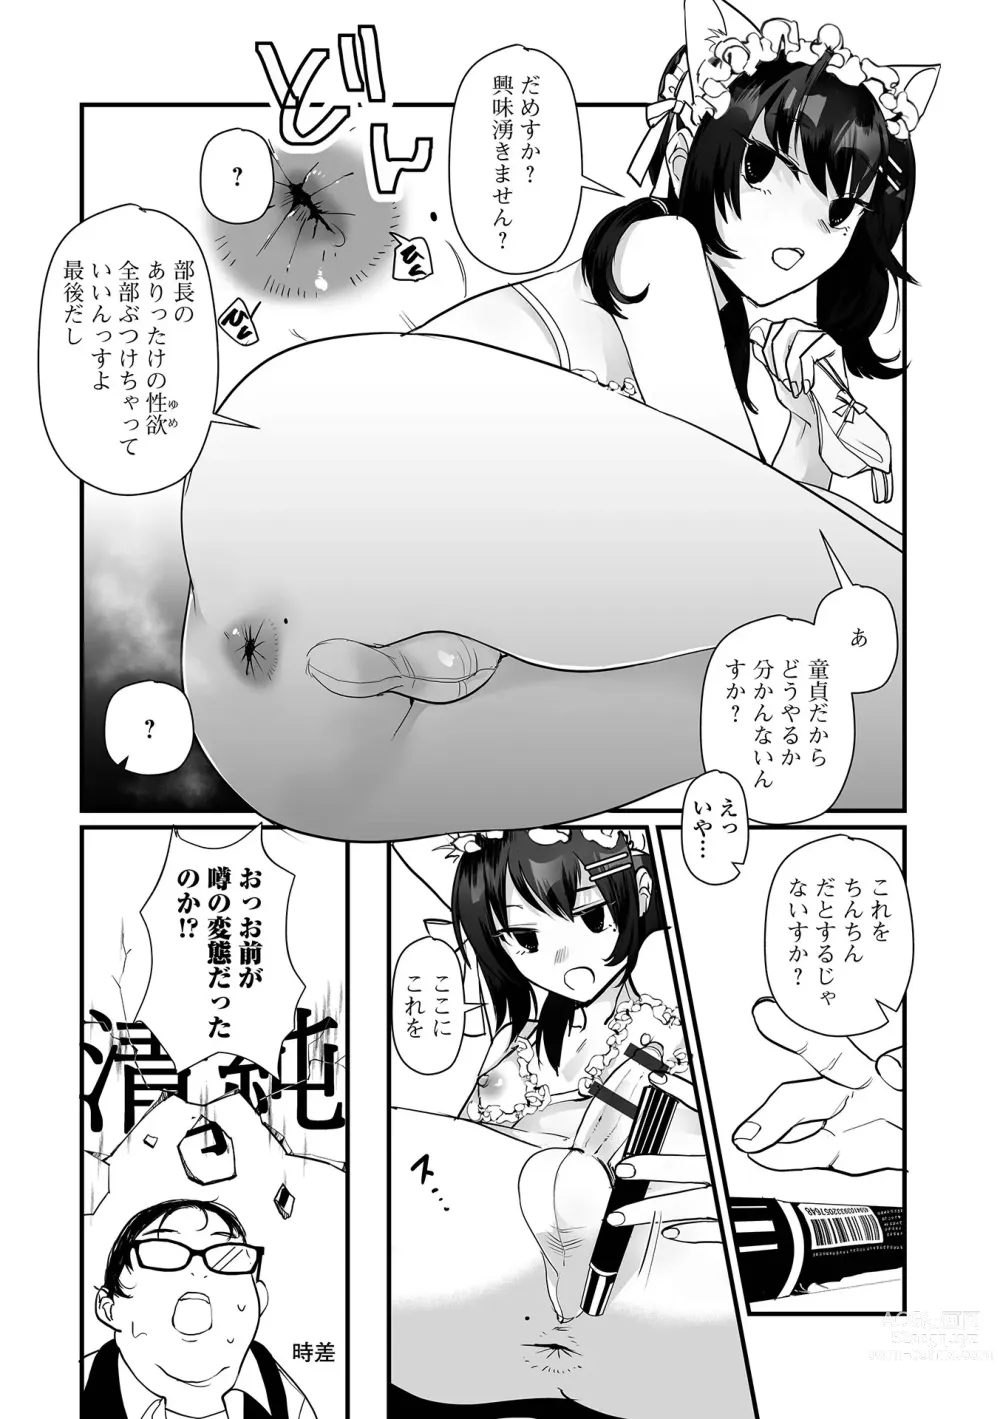 Page 6 of manga Gekkan Web Otoko no Ko-llection! S Vol. 95